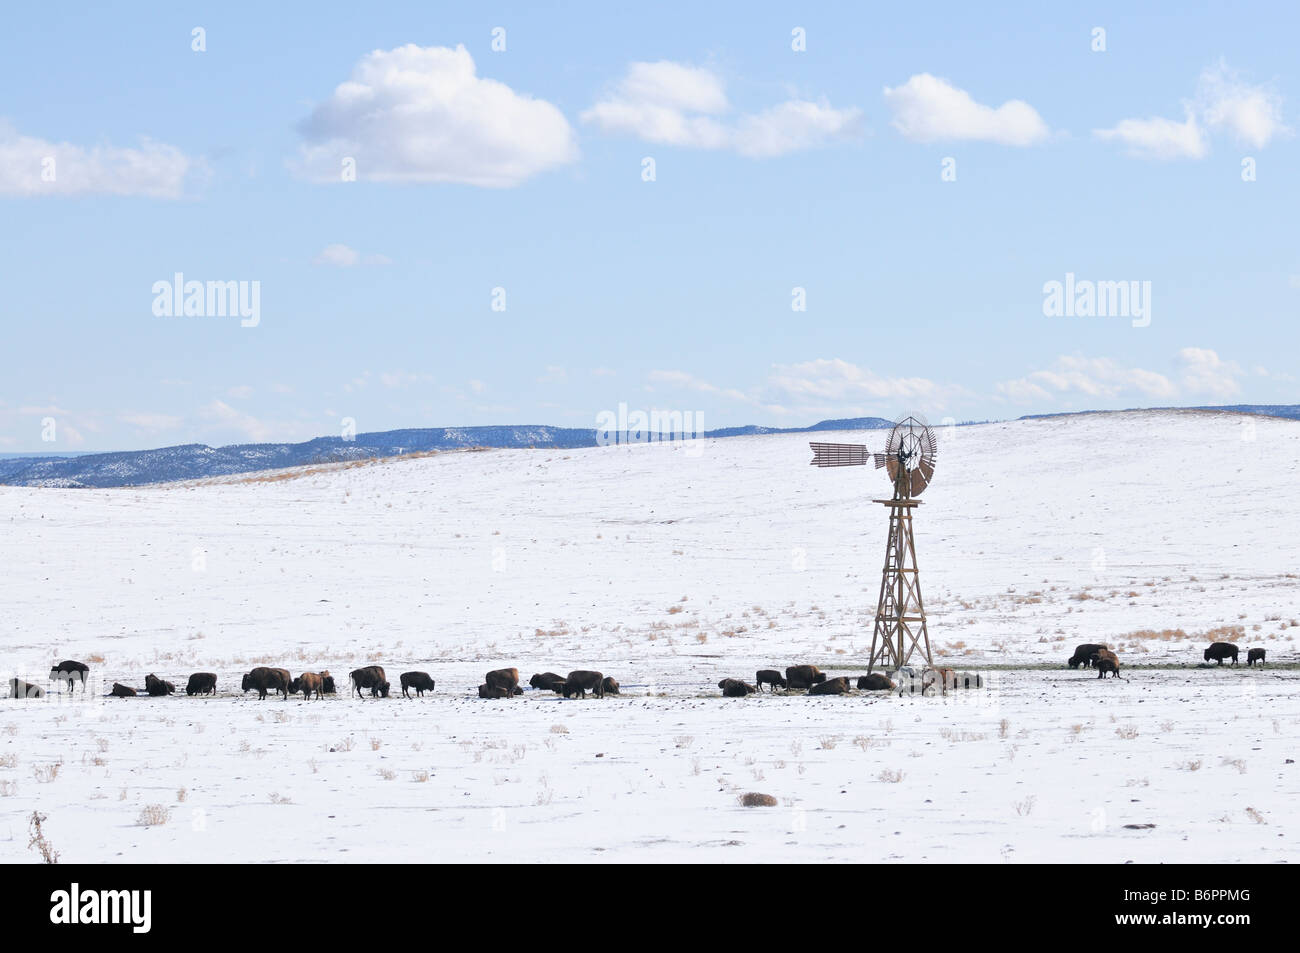 La manada de búfalos y unas cuantas vacas se reúnen alrededor de un molino de viento en funcionamiento en la pradera por la Hwy 9 fuera del Parque Nacional Zion, UT Foto de stock